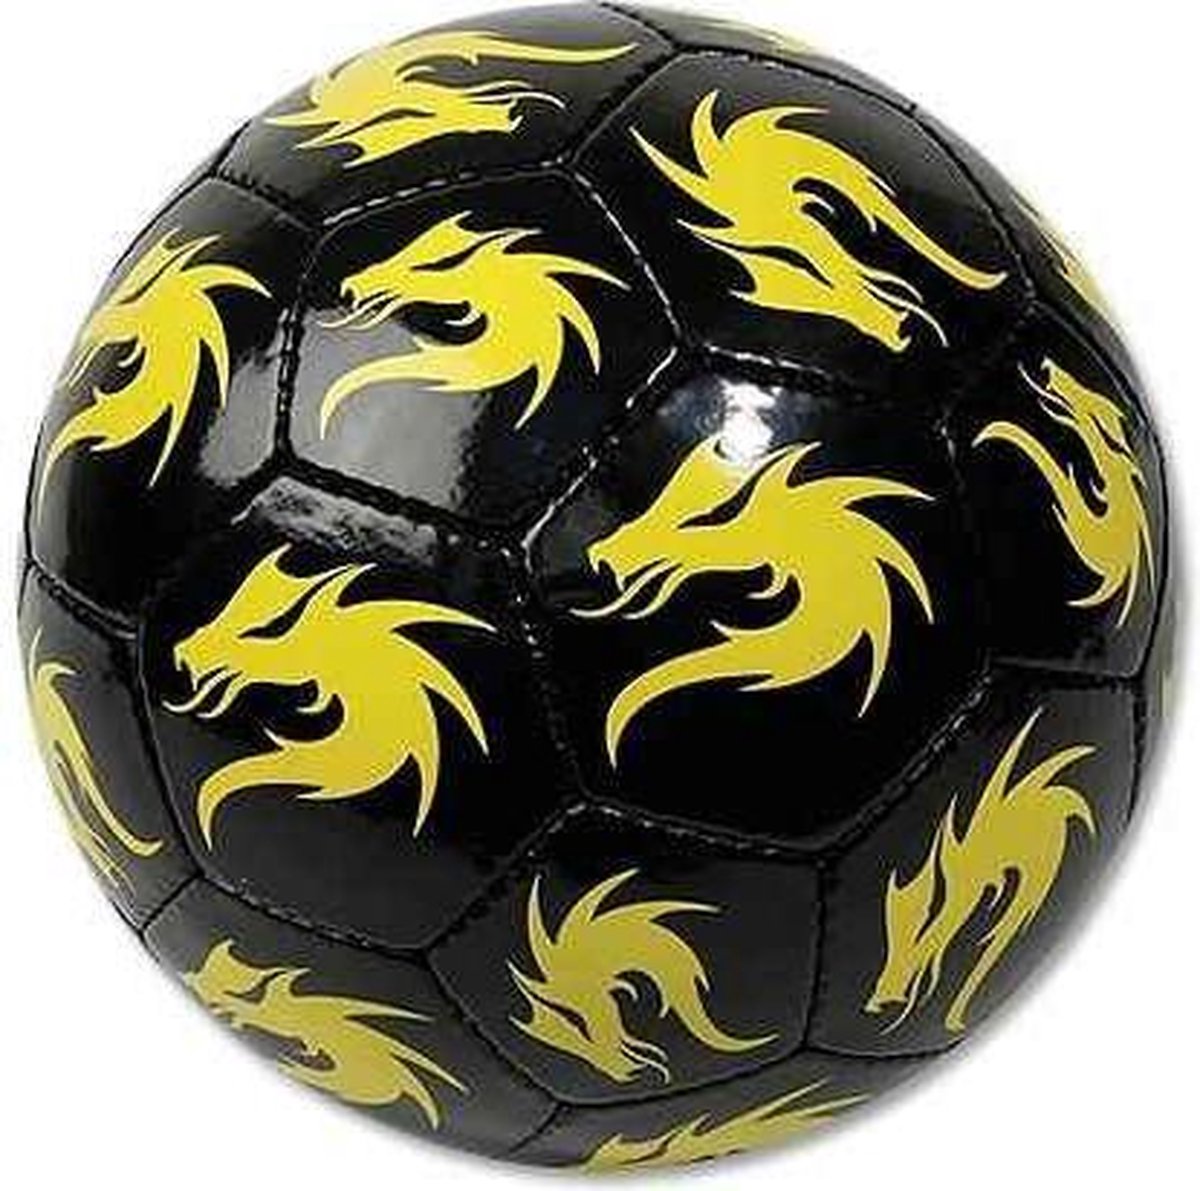 Replica Voetbal Streetball Zwart/Geel | bol.com